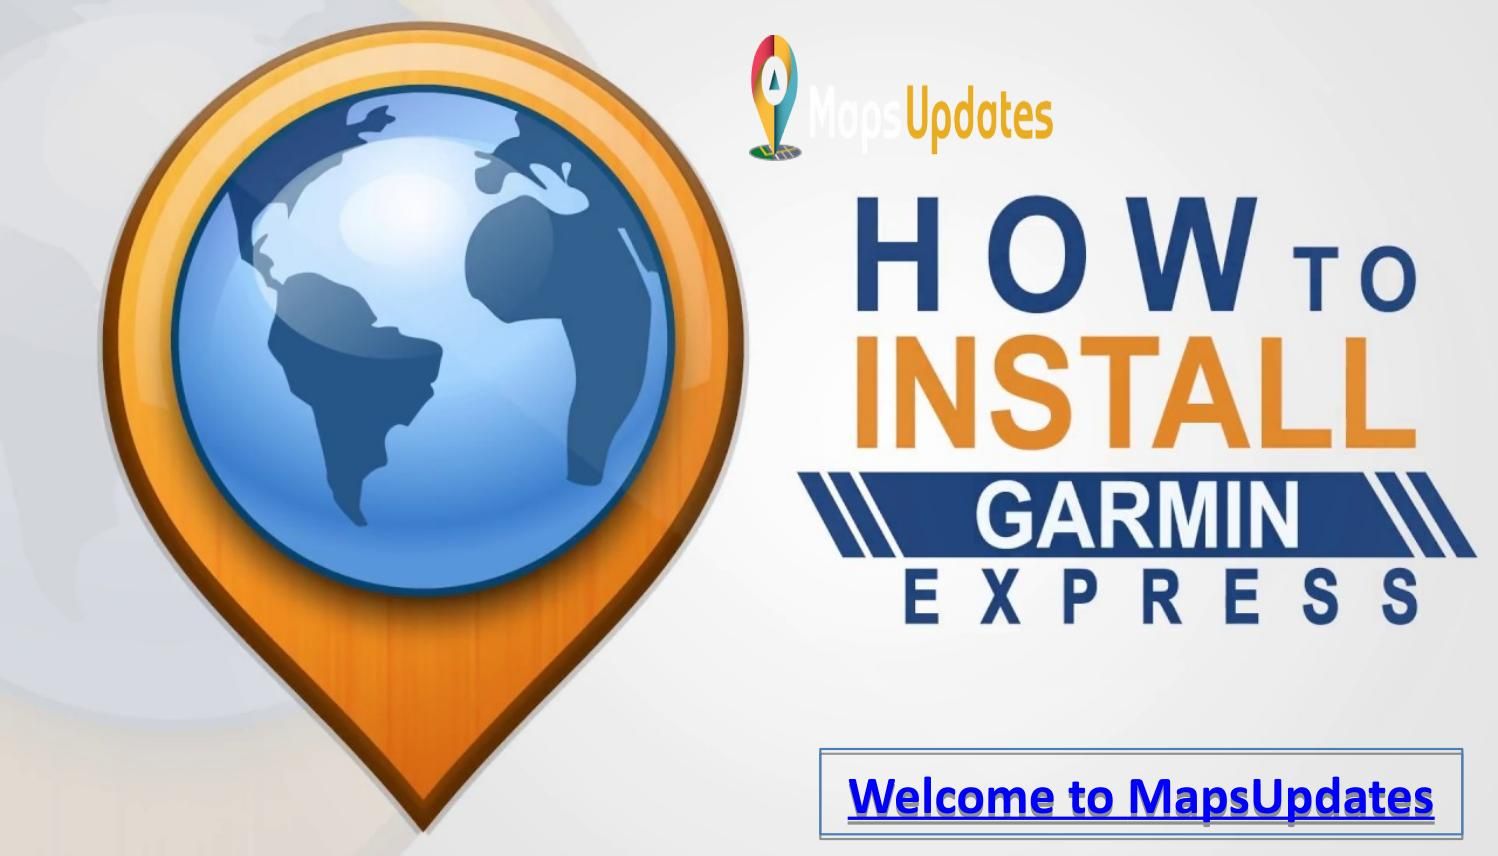 Garmin.com/express Updates